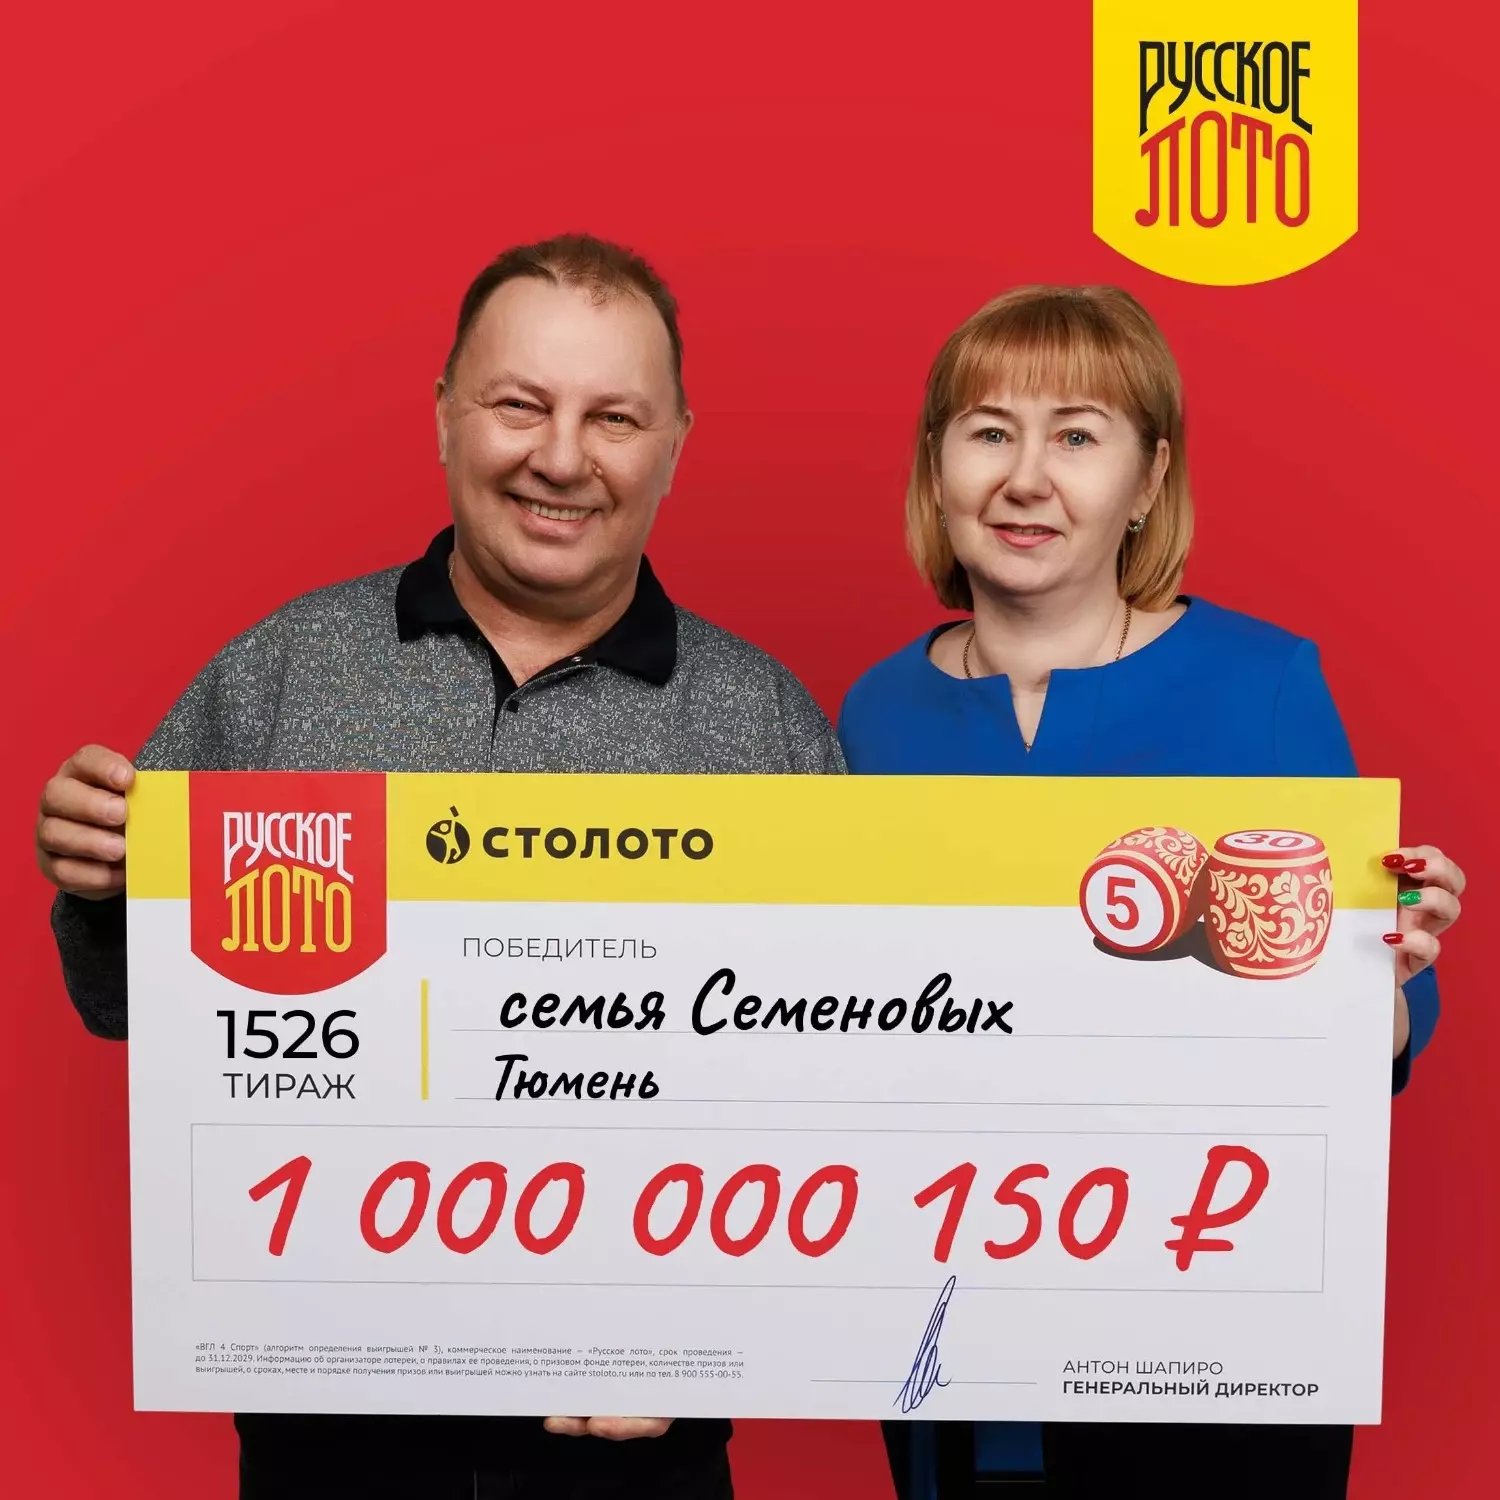 Лотерейный выигрыш: 1 000 000 150 рублей